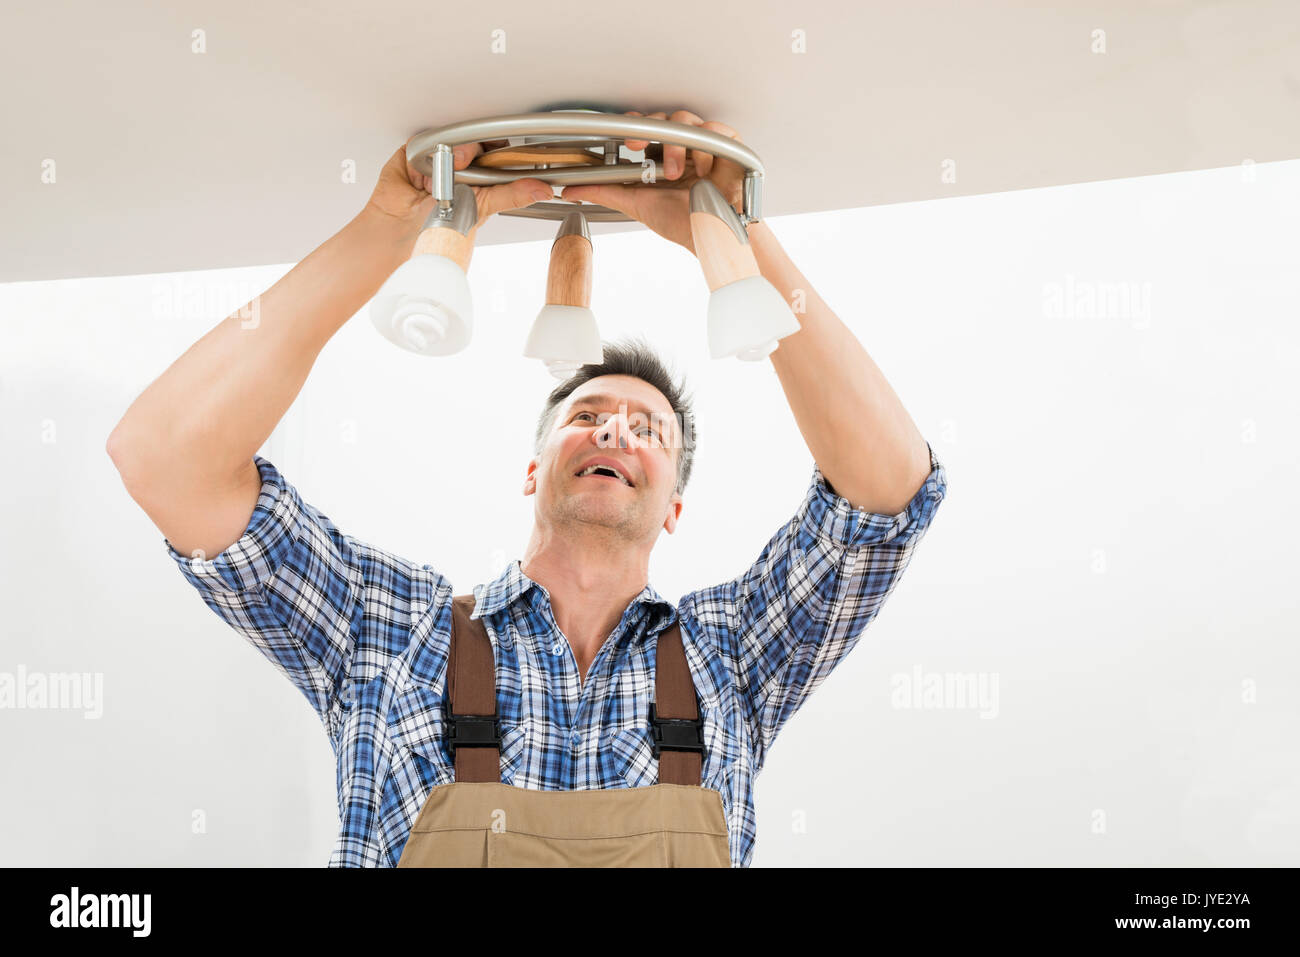 Ritratto di un elettricista maschio che fissa la luce sul soffitto Foto Stock